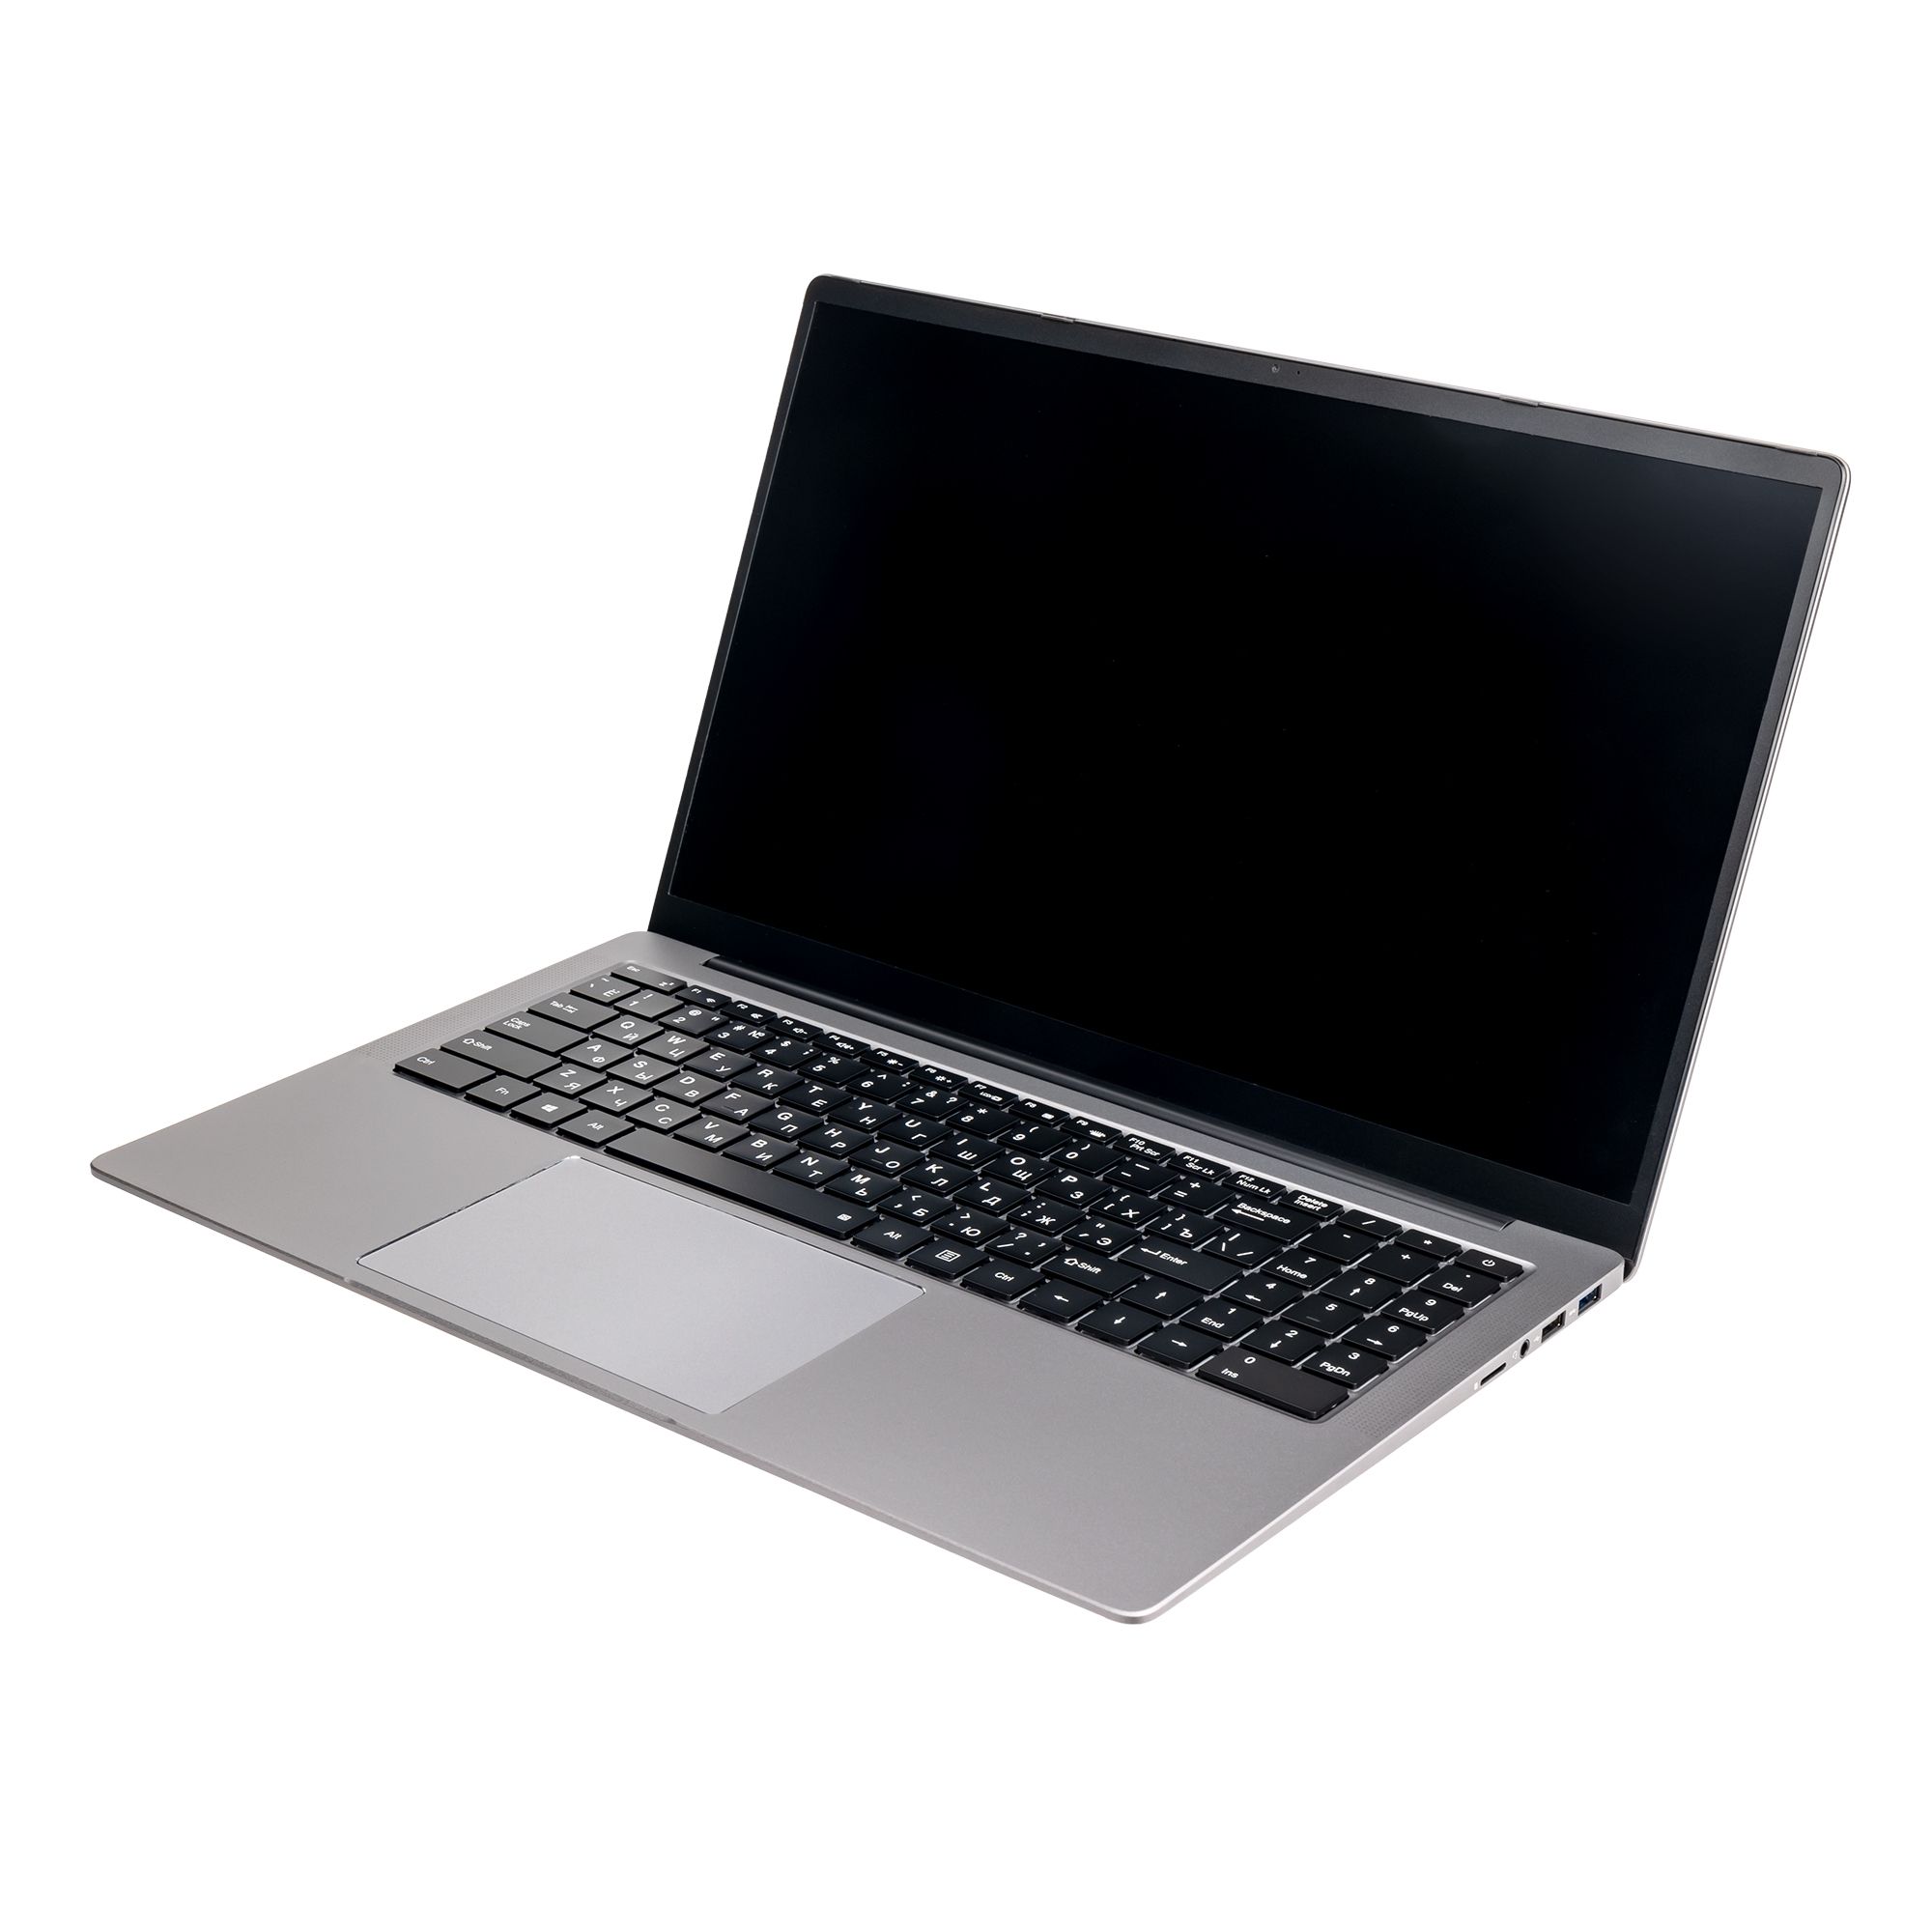 Ноутбук Hiper Expertbook MTL1601 (MTL1601B1115WH) цена и фото